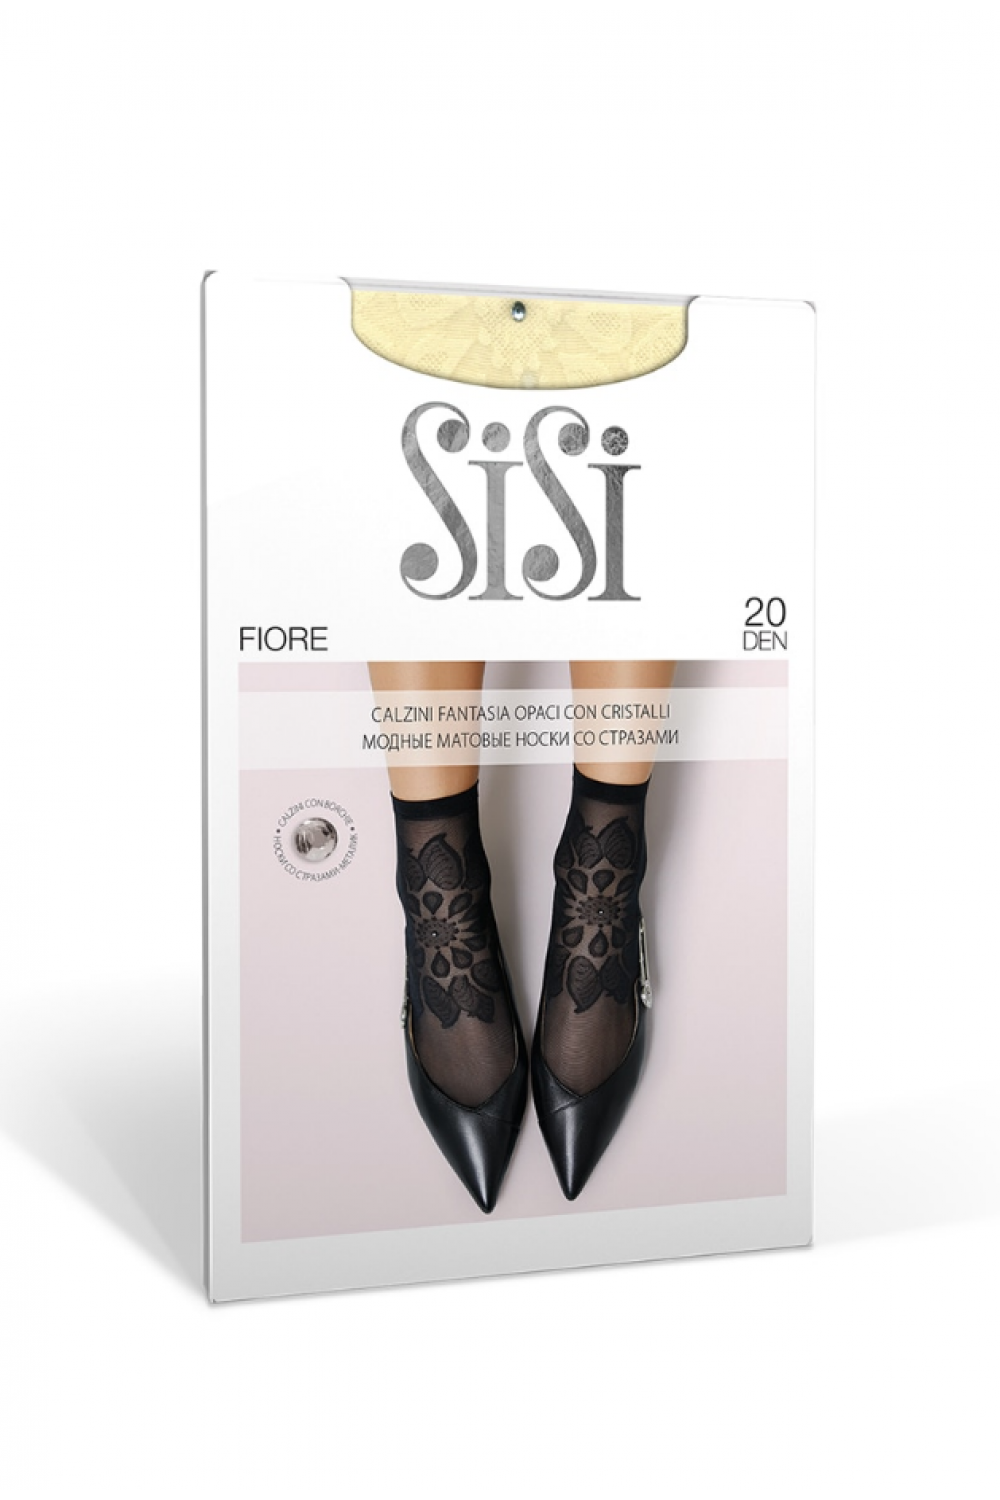 Носки женские SiSi FIORE 20 den, тонкие, матовые, с рисунком, фантазийные, капроновые